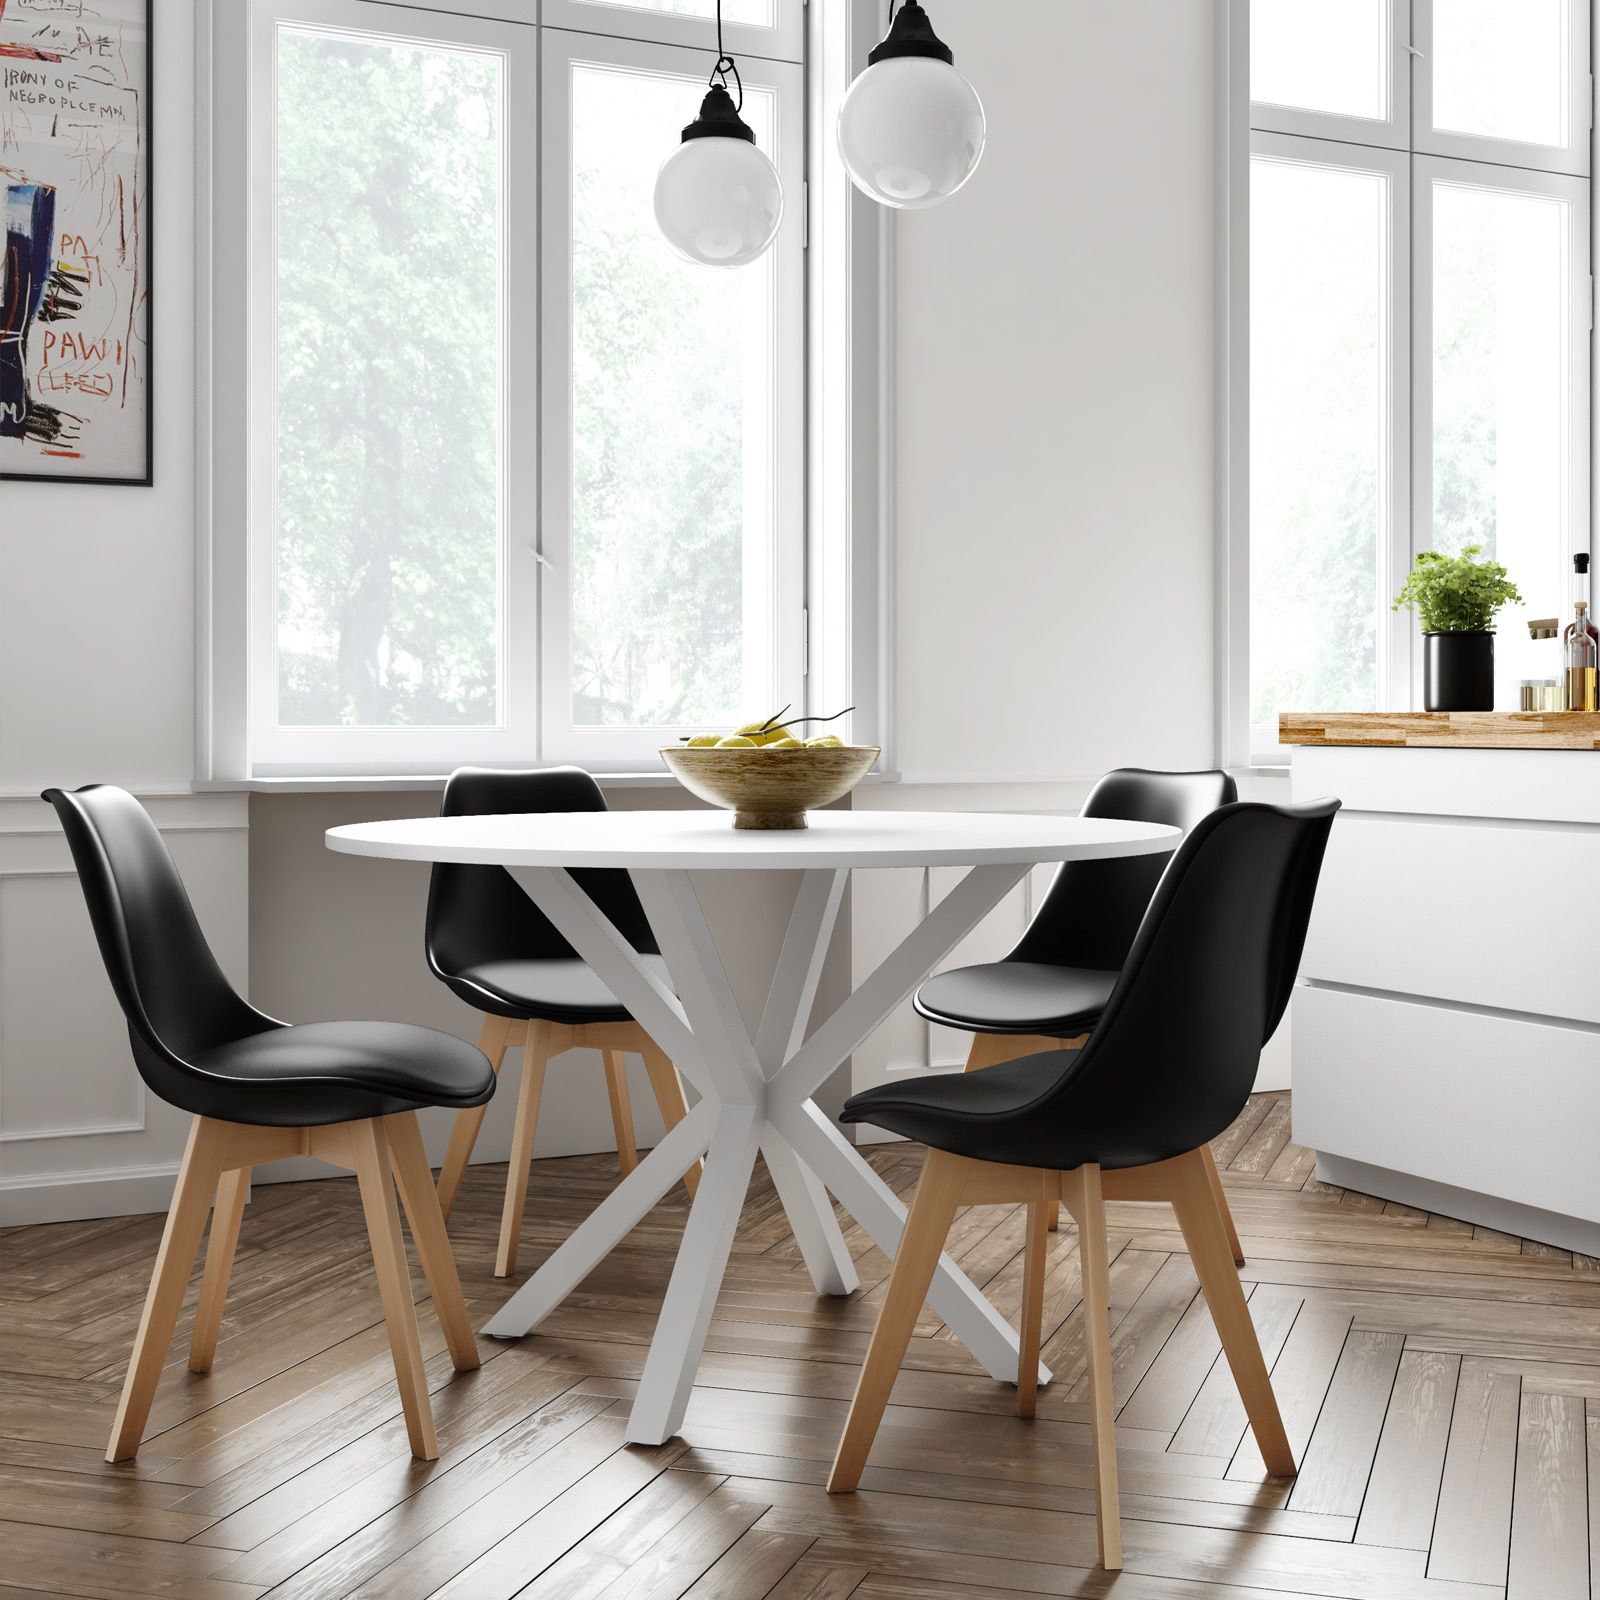 sedie nere,sedie moderne,sedie colore nero,sedie cucina